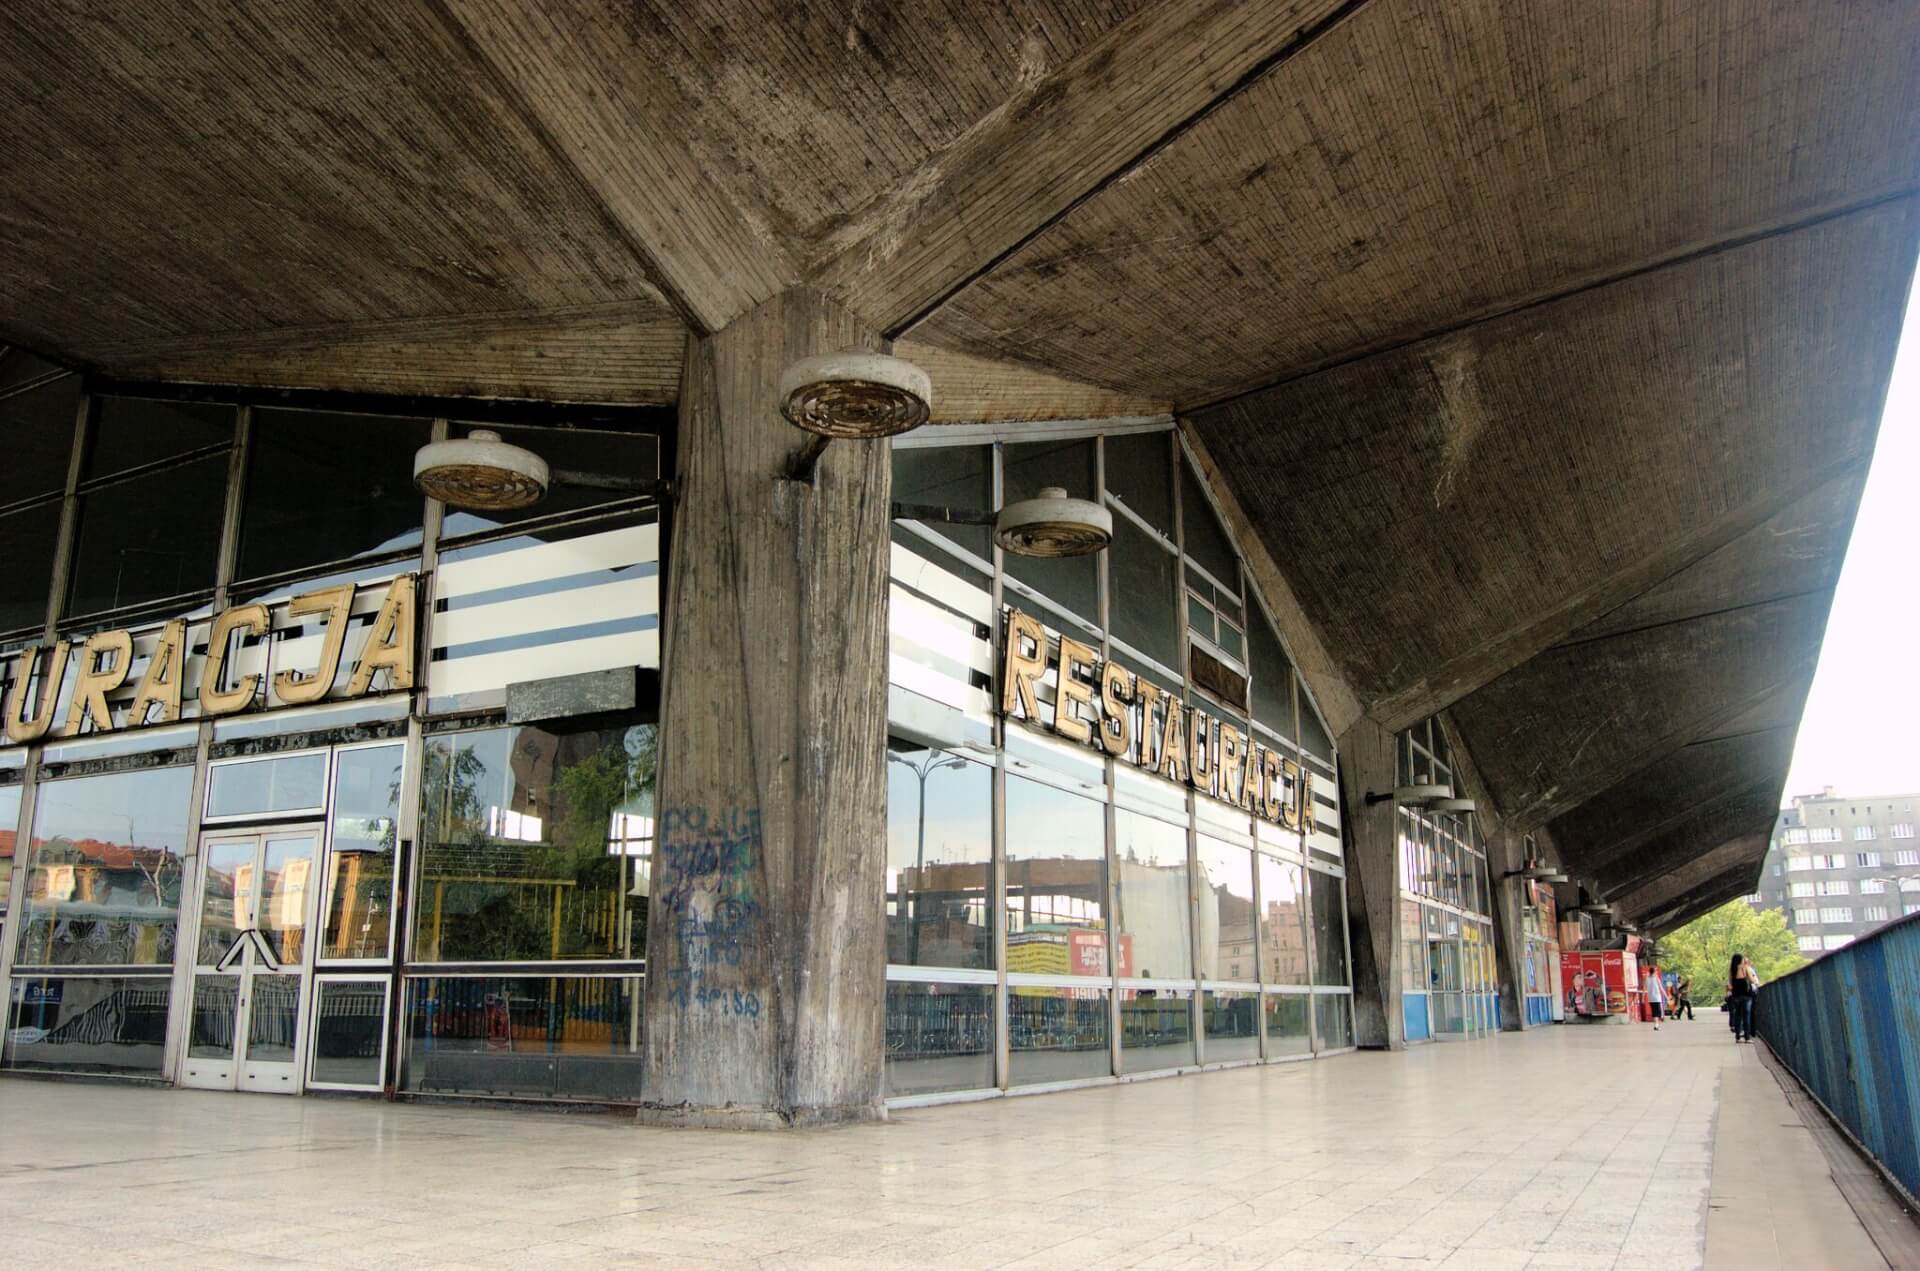 Dworzec kolejowy w Katowicach przed wyburzeniem